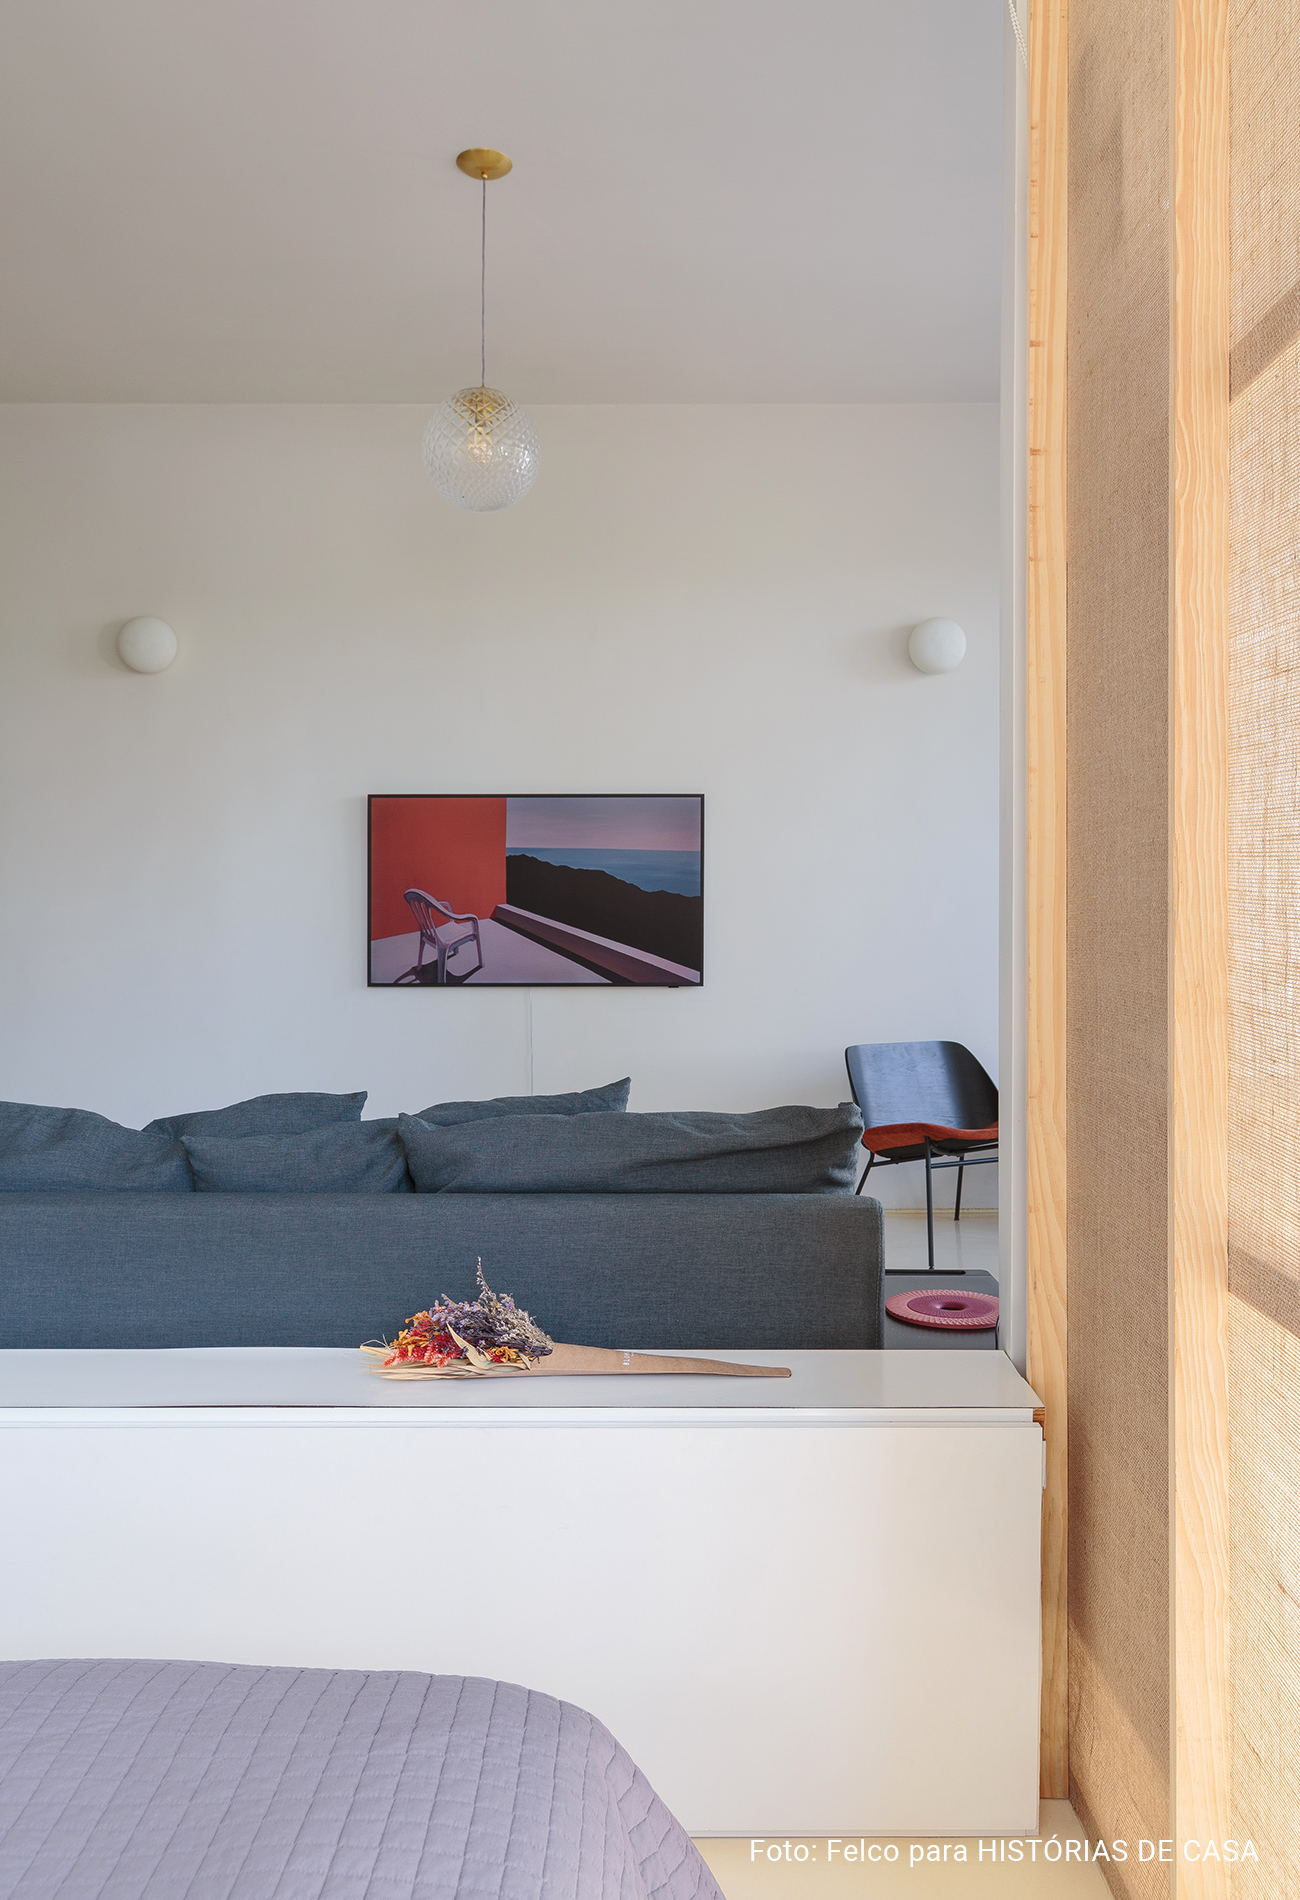 Apartamento pequeno com janelão e boas ideias para otimizar espaço